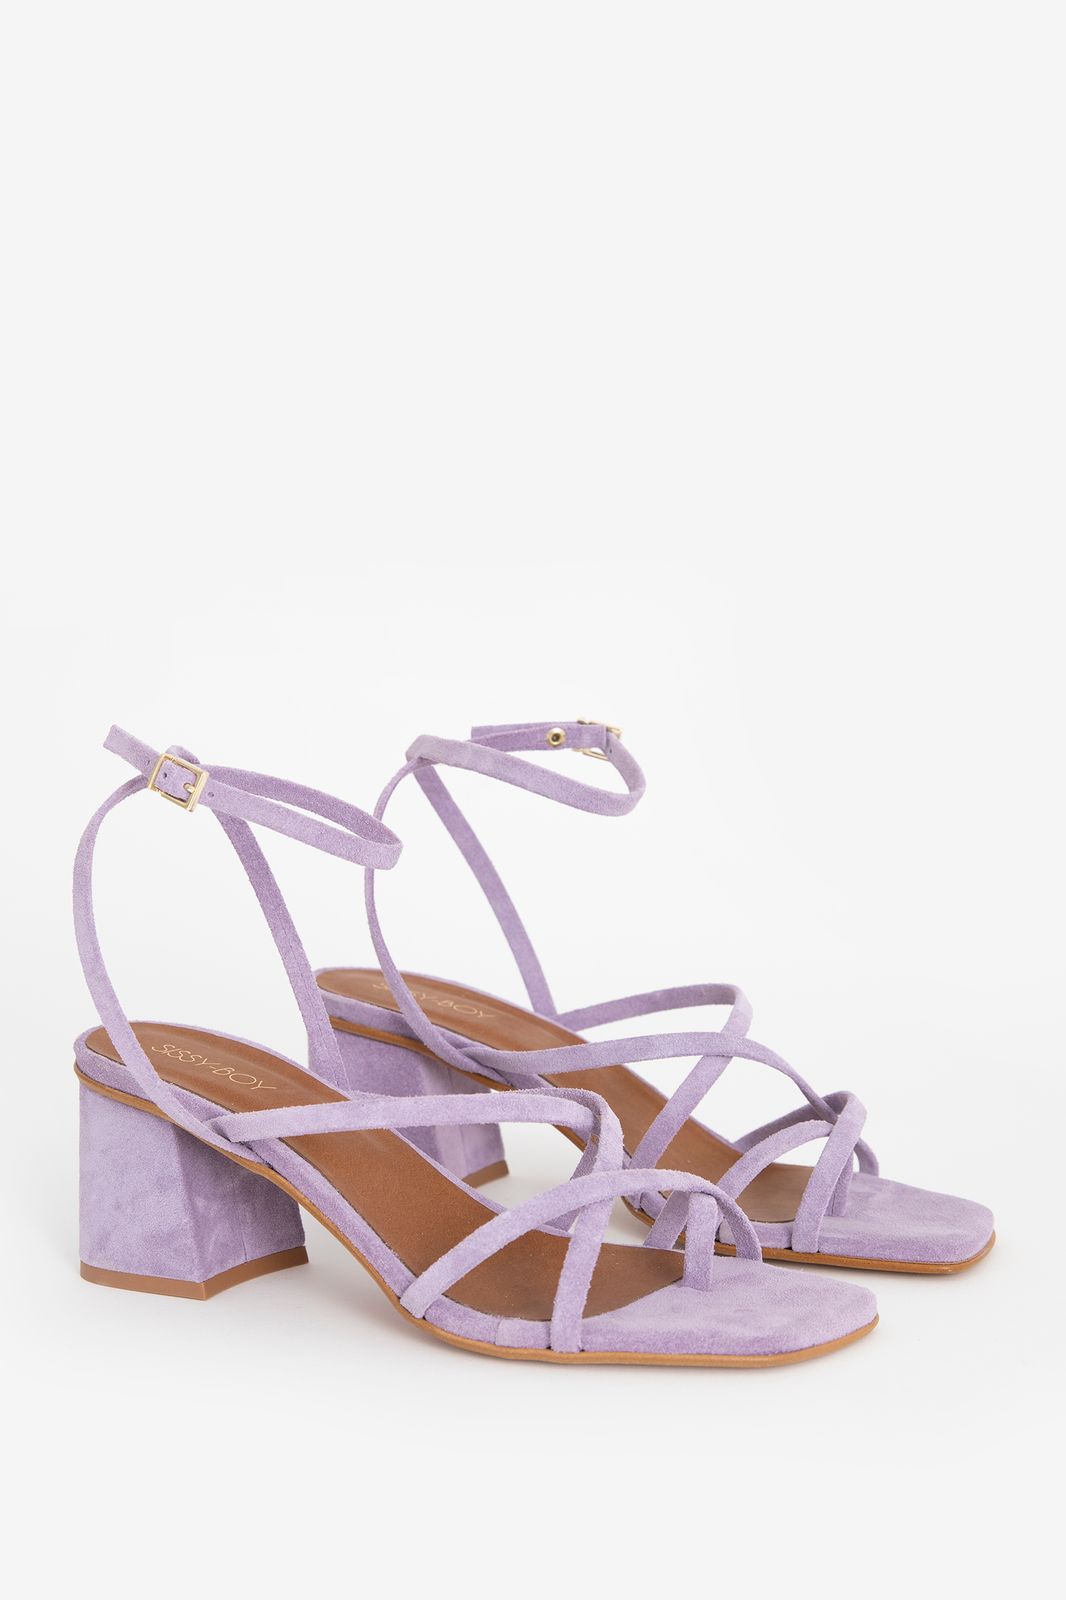 Sandales à talon avec brides croisées - violet clair